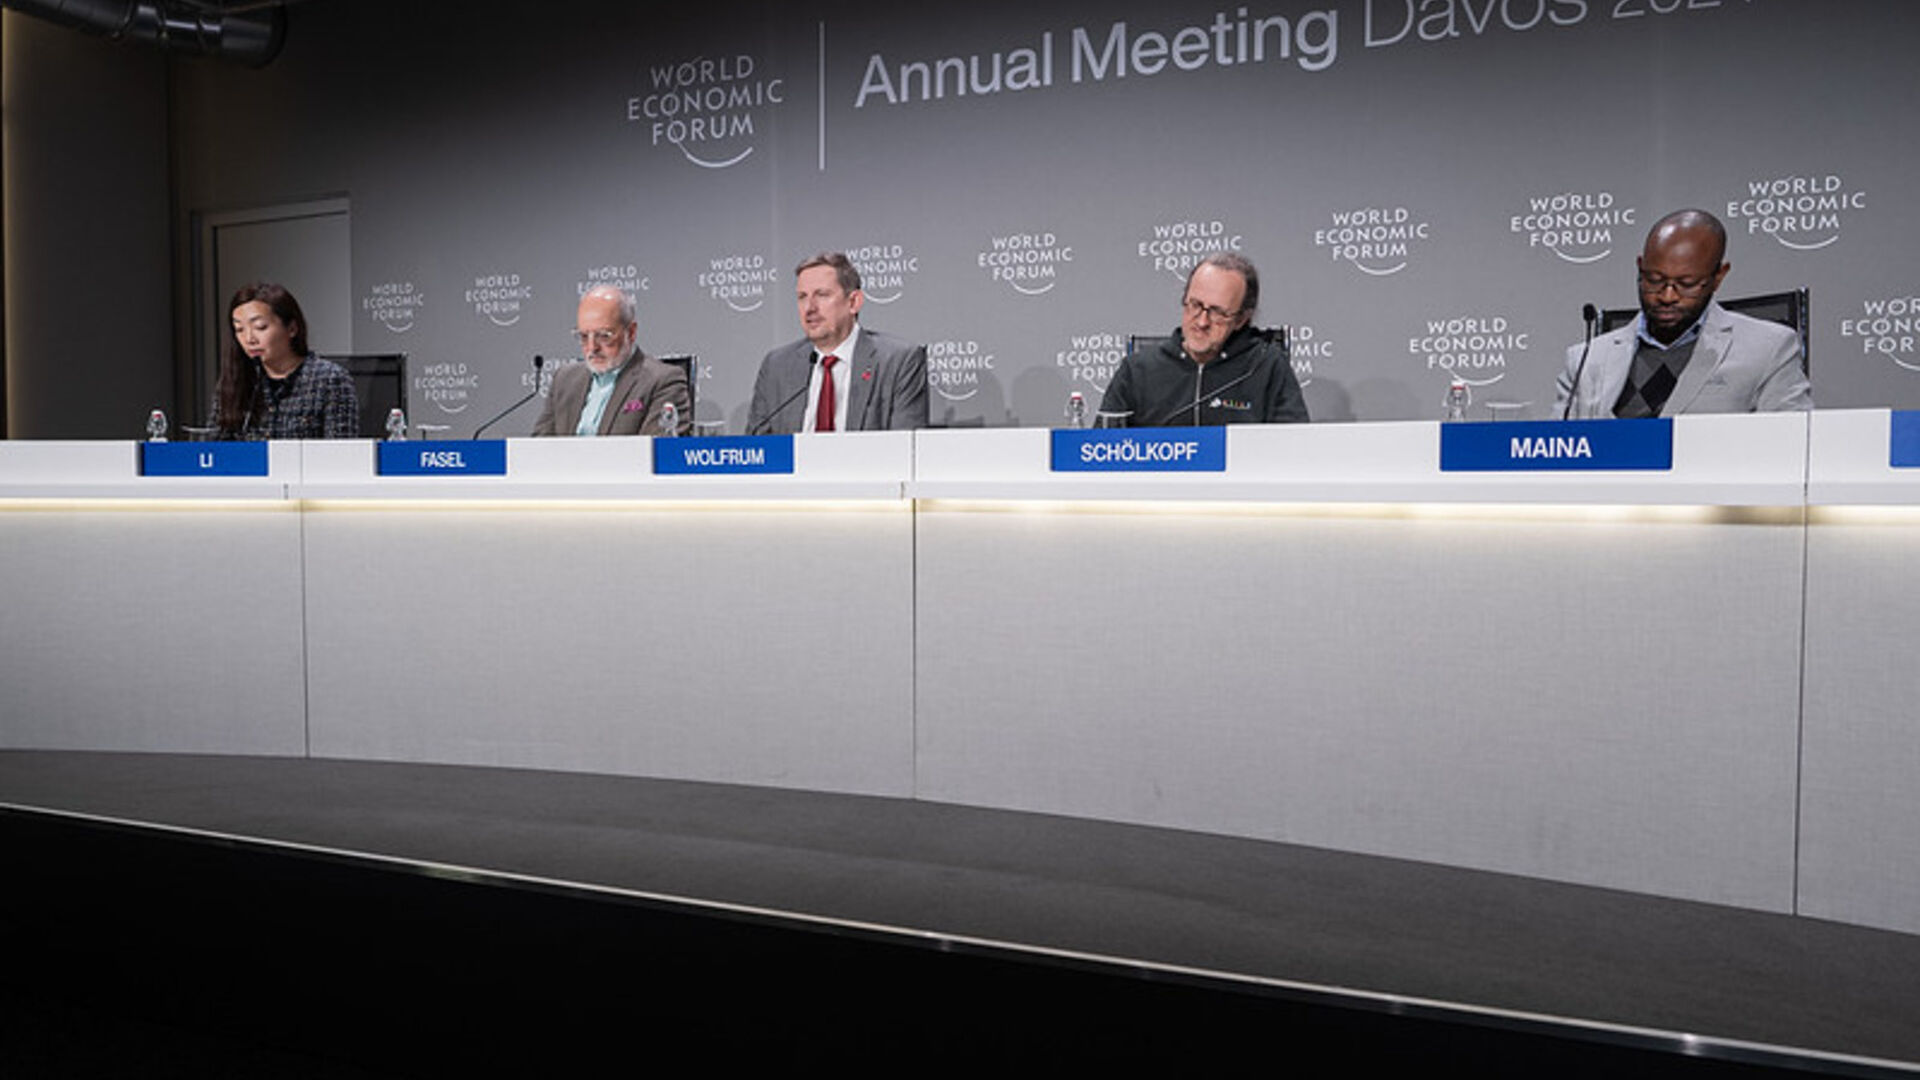 Mạng lưới AI và Điện toán Quốc tế: cuộc họp báo trình bày ICAIN trong phiên bản 2024 của Diễn đàn Kinh tế Thế giới ở Davos (Bang Grisons)